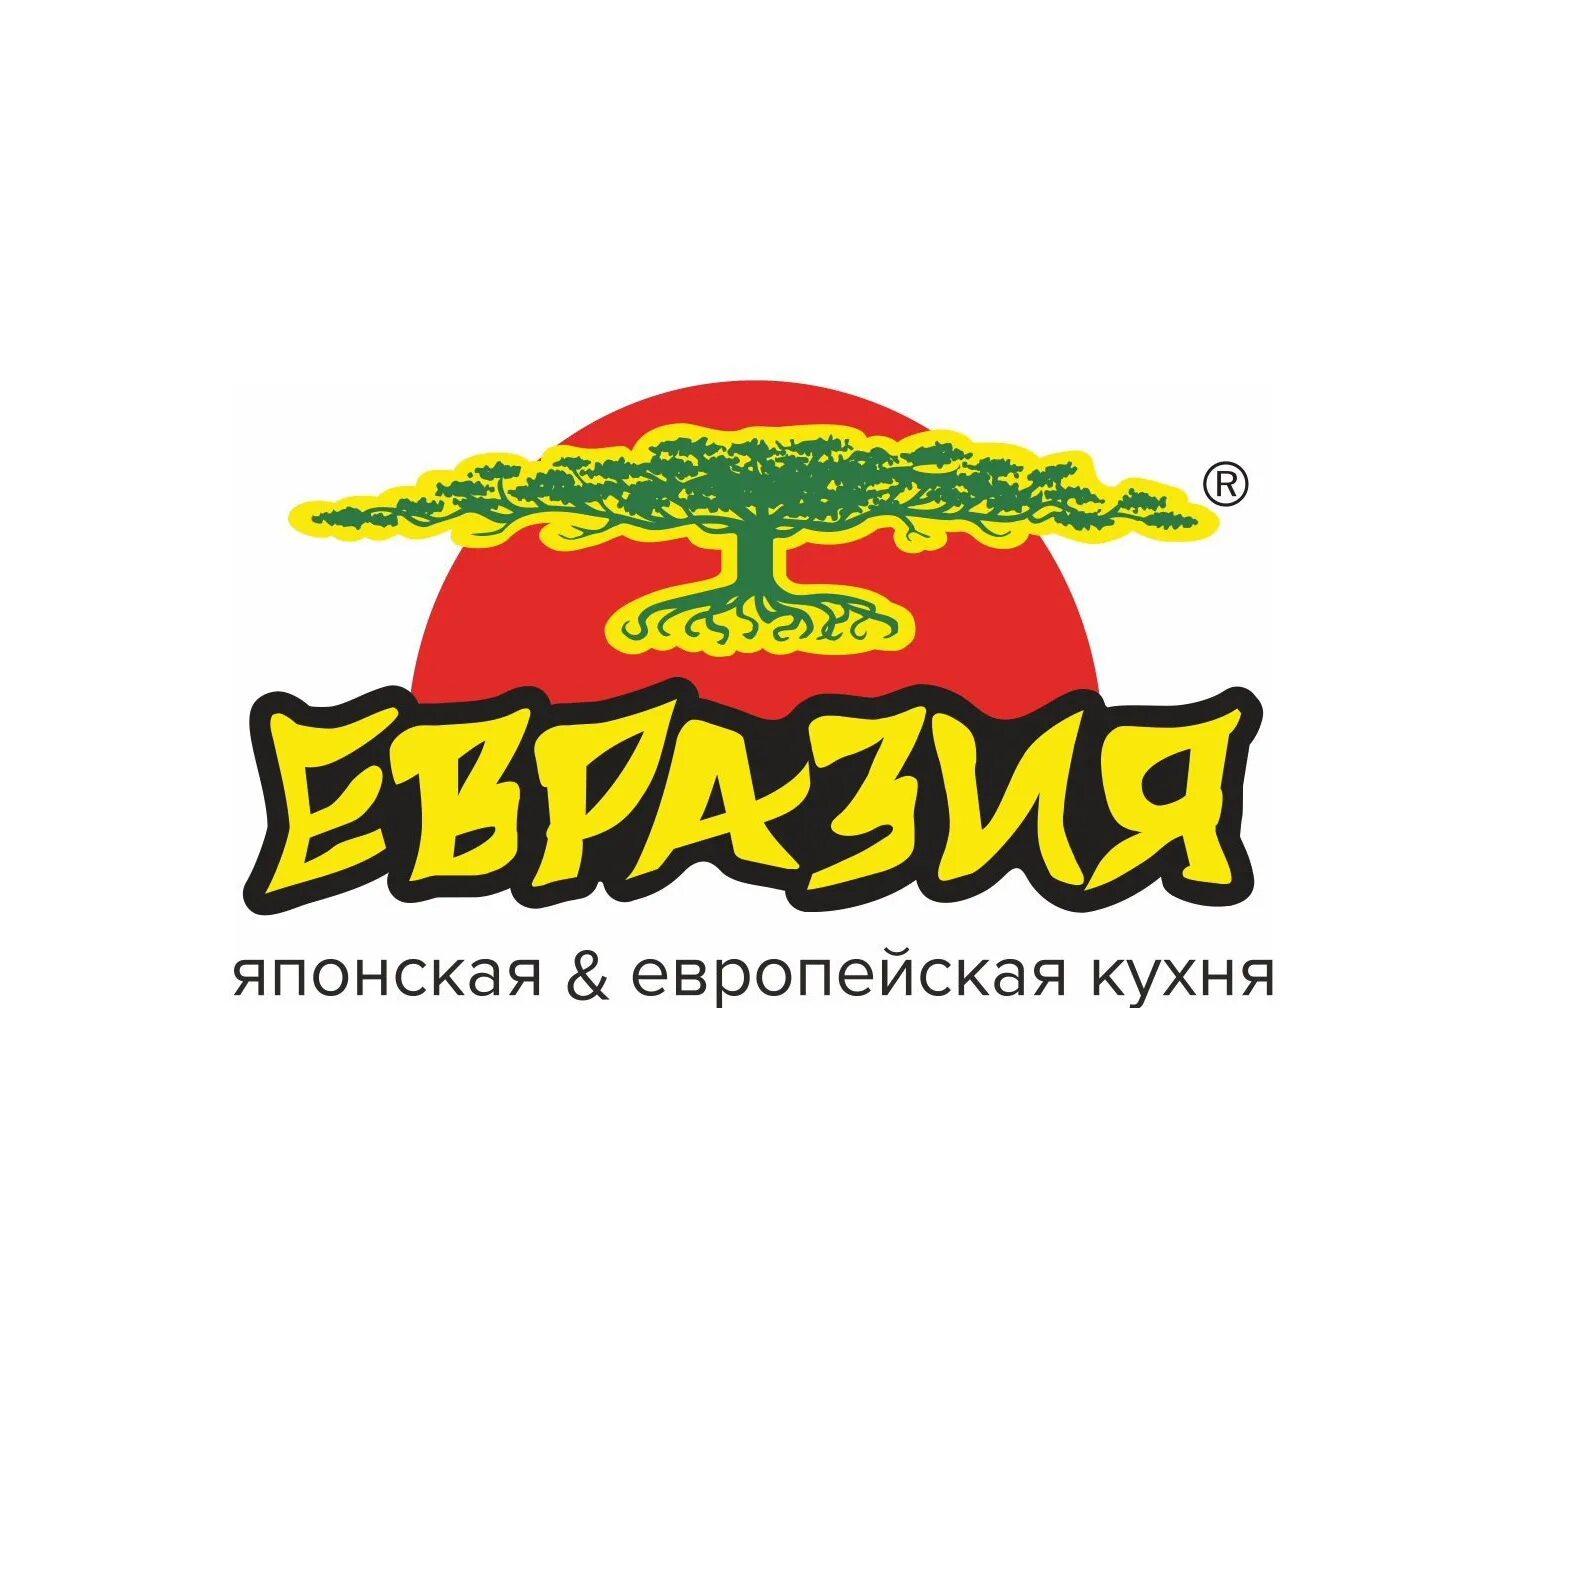 Ао евразия. Евразия ресторан логотип. Евразия сеть ресторанов Санкт-Петербург. Евразия суши. Евразия СПБ логотип.